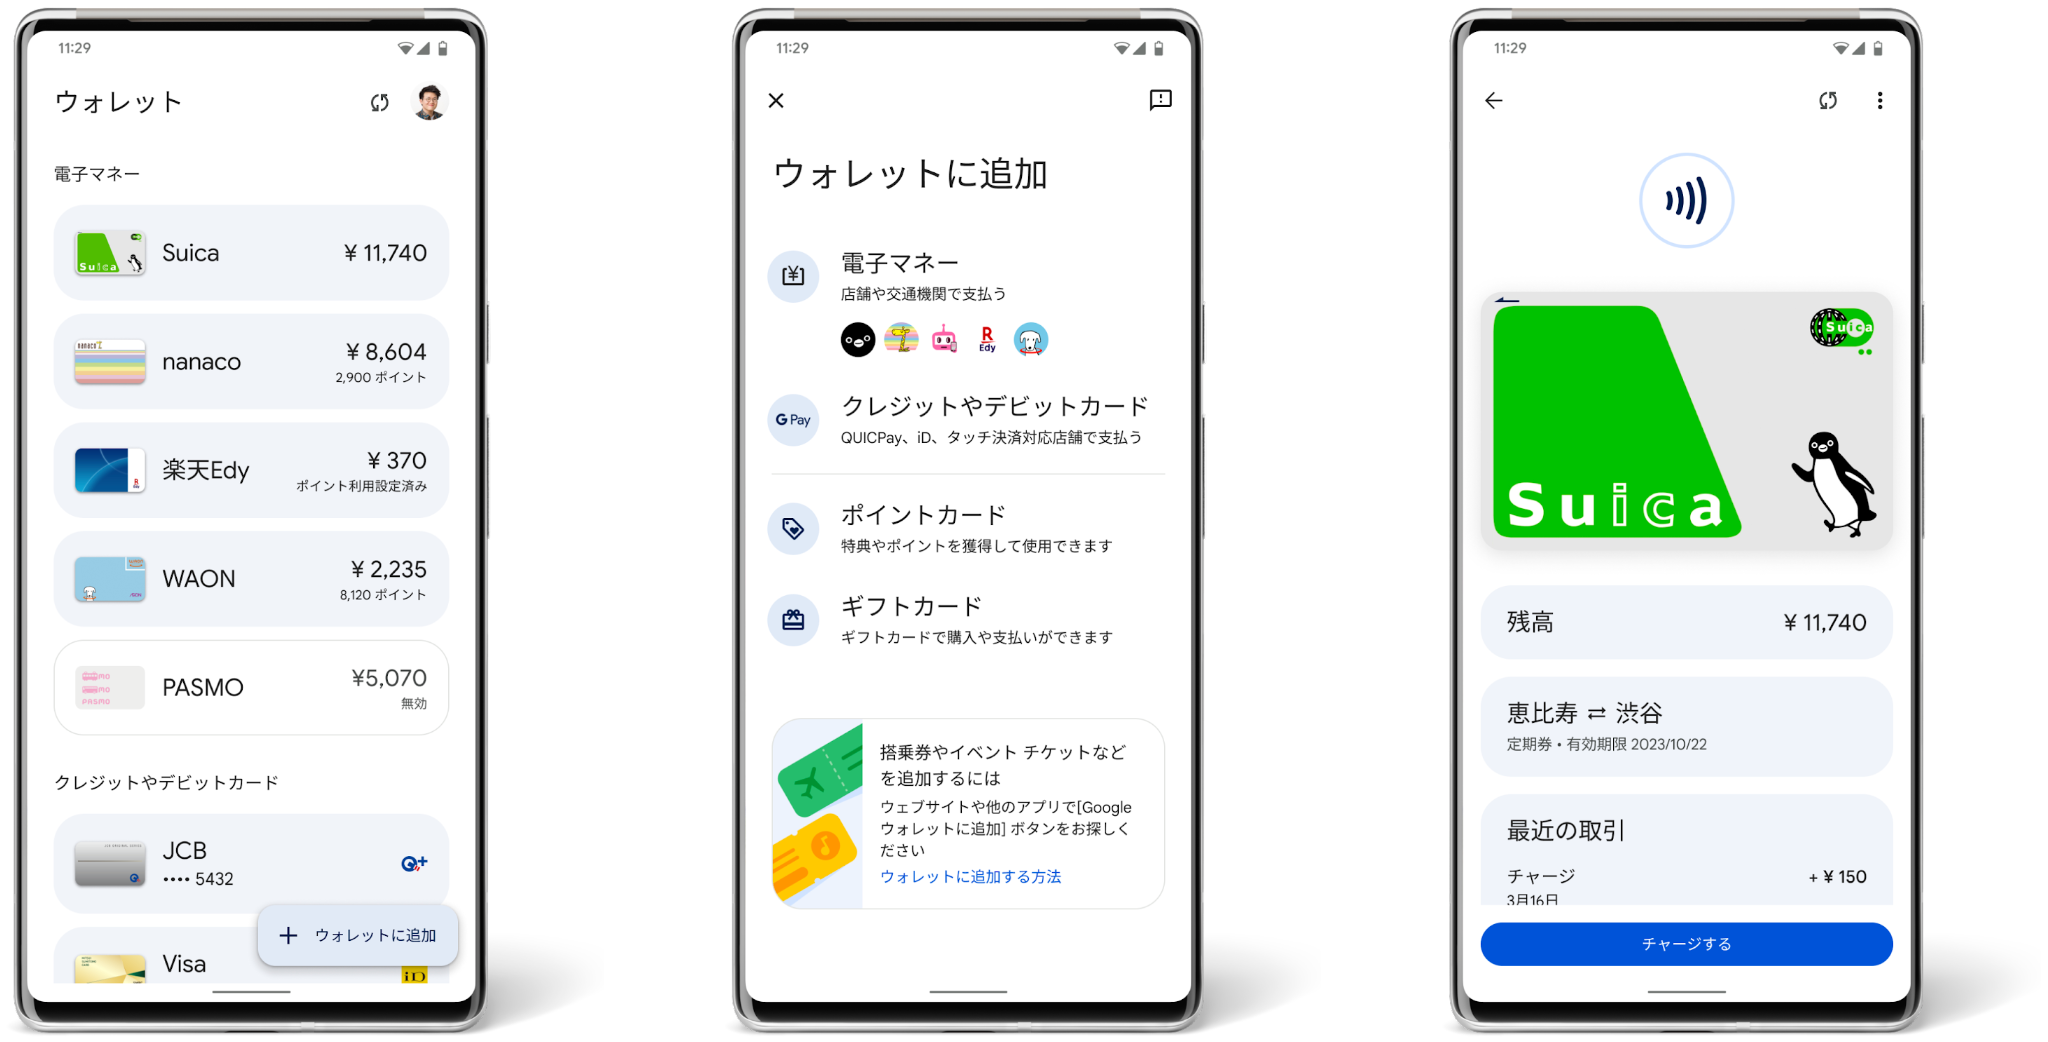 Renders of three phones with screens showing Japanese Google Wallet app